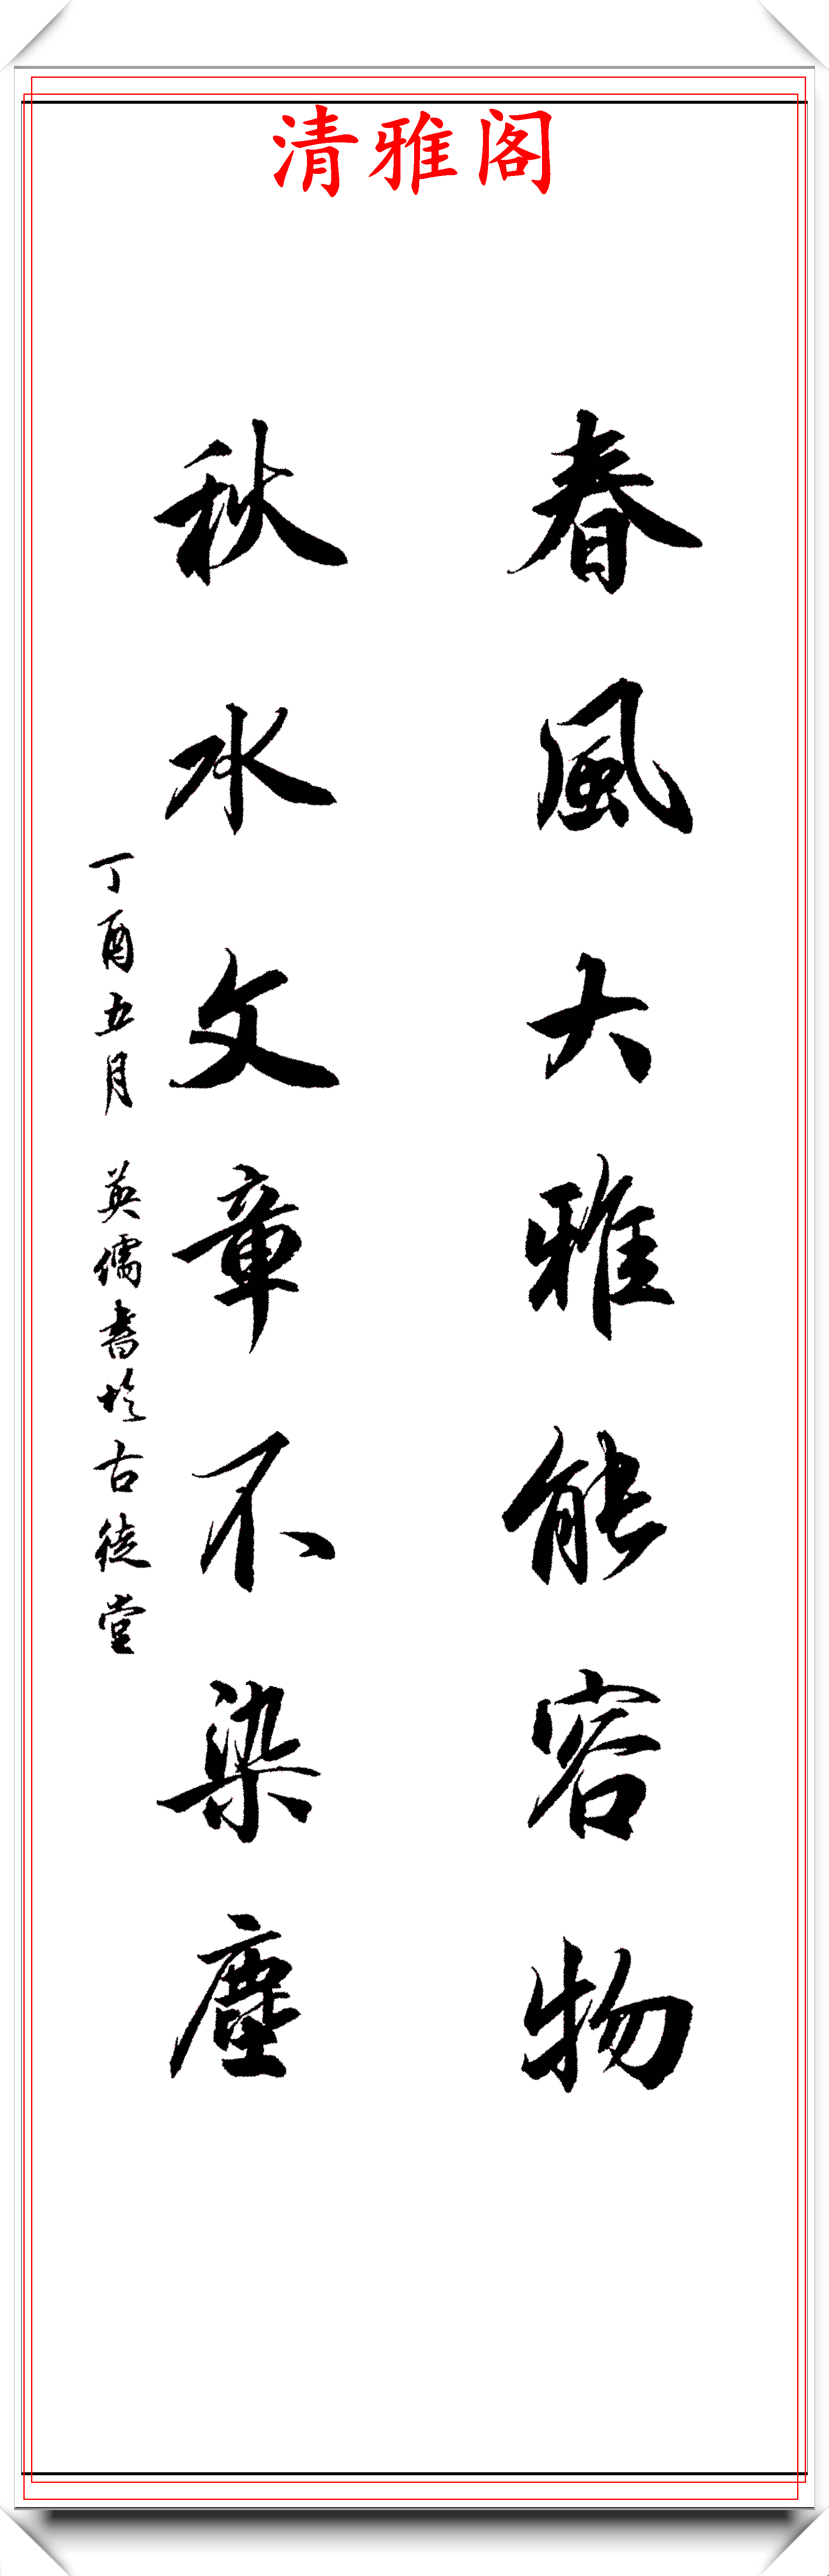 著名书法家吕英儒,精选20幅行书立轴欣赏,二王笔法的现代风格